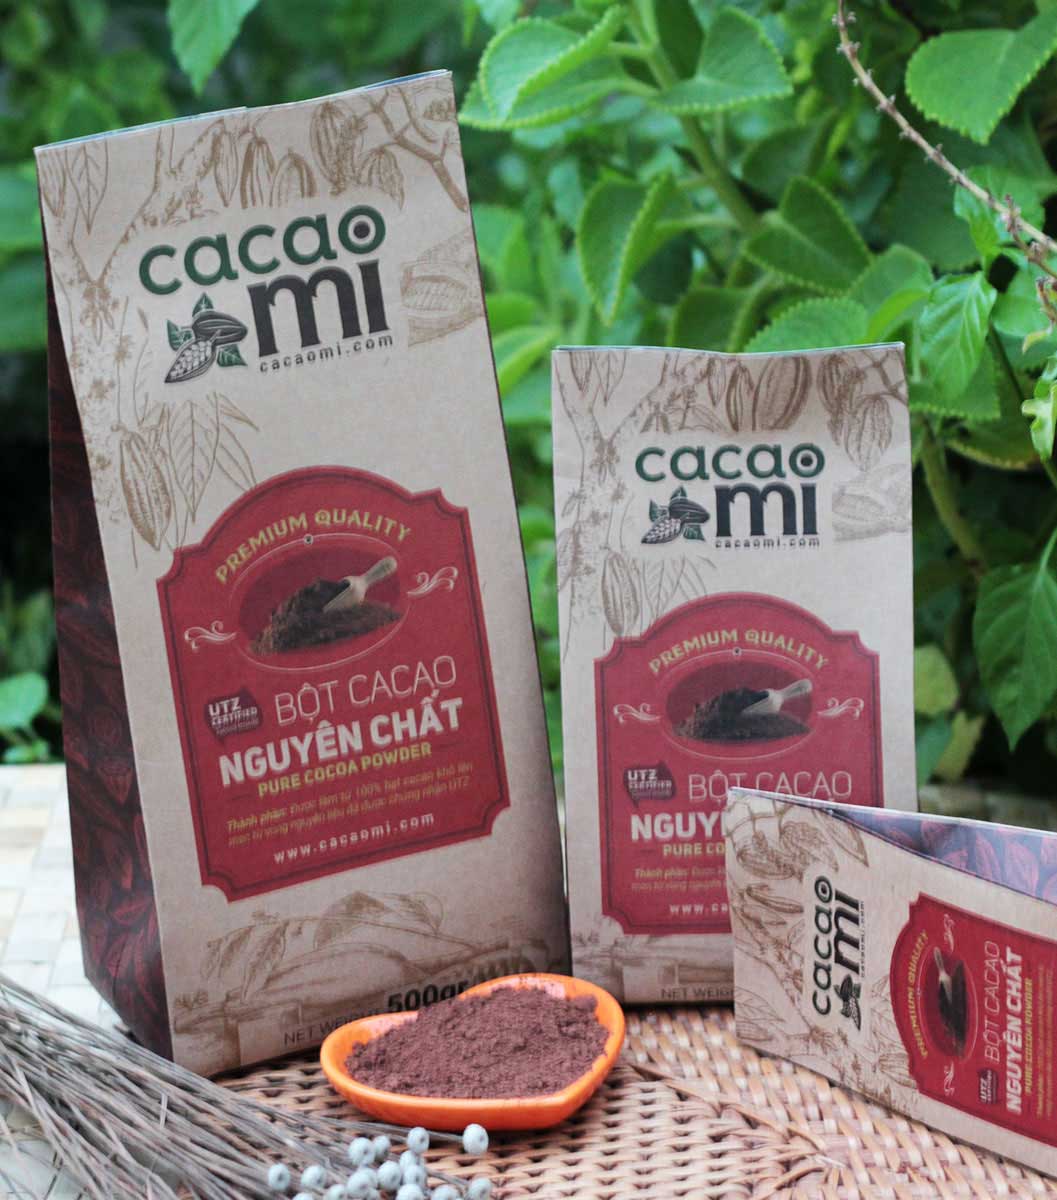 Túi cacao 250gr bột cacao nguyên chất